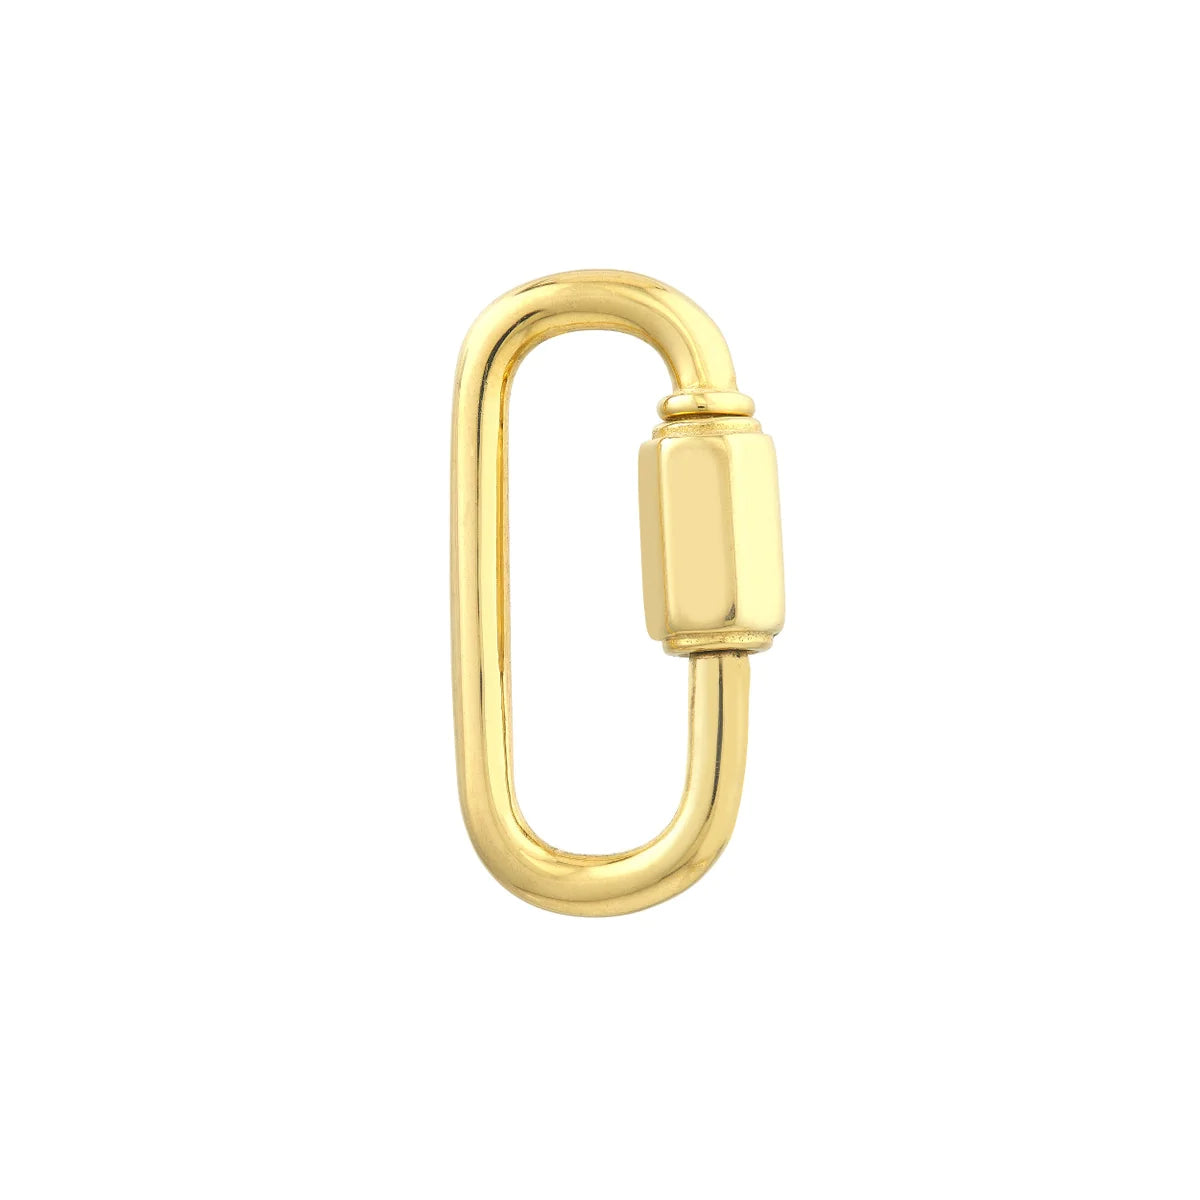 14K Gold Carabiner Necklace, 14K Oval Carabiner Jewelry, 14K Gold Carabiner Lock, Gold Elongated Link, Gold Carabiner Lock, Carabiner Gold